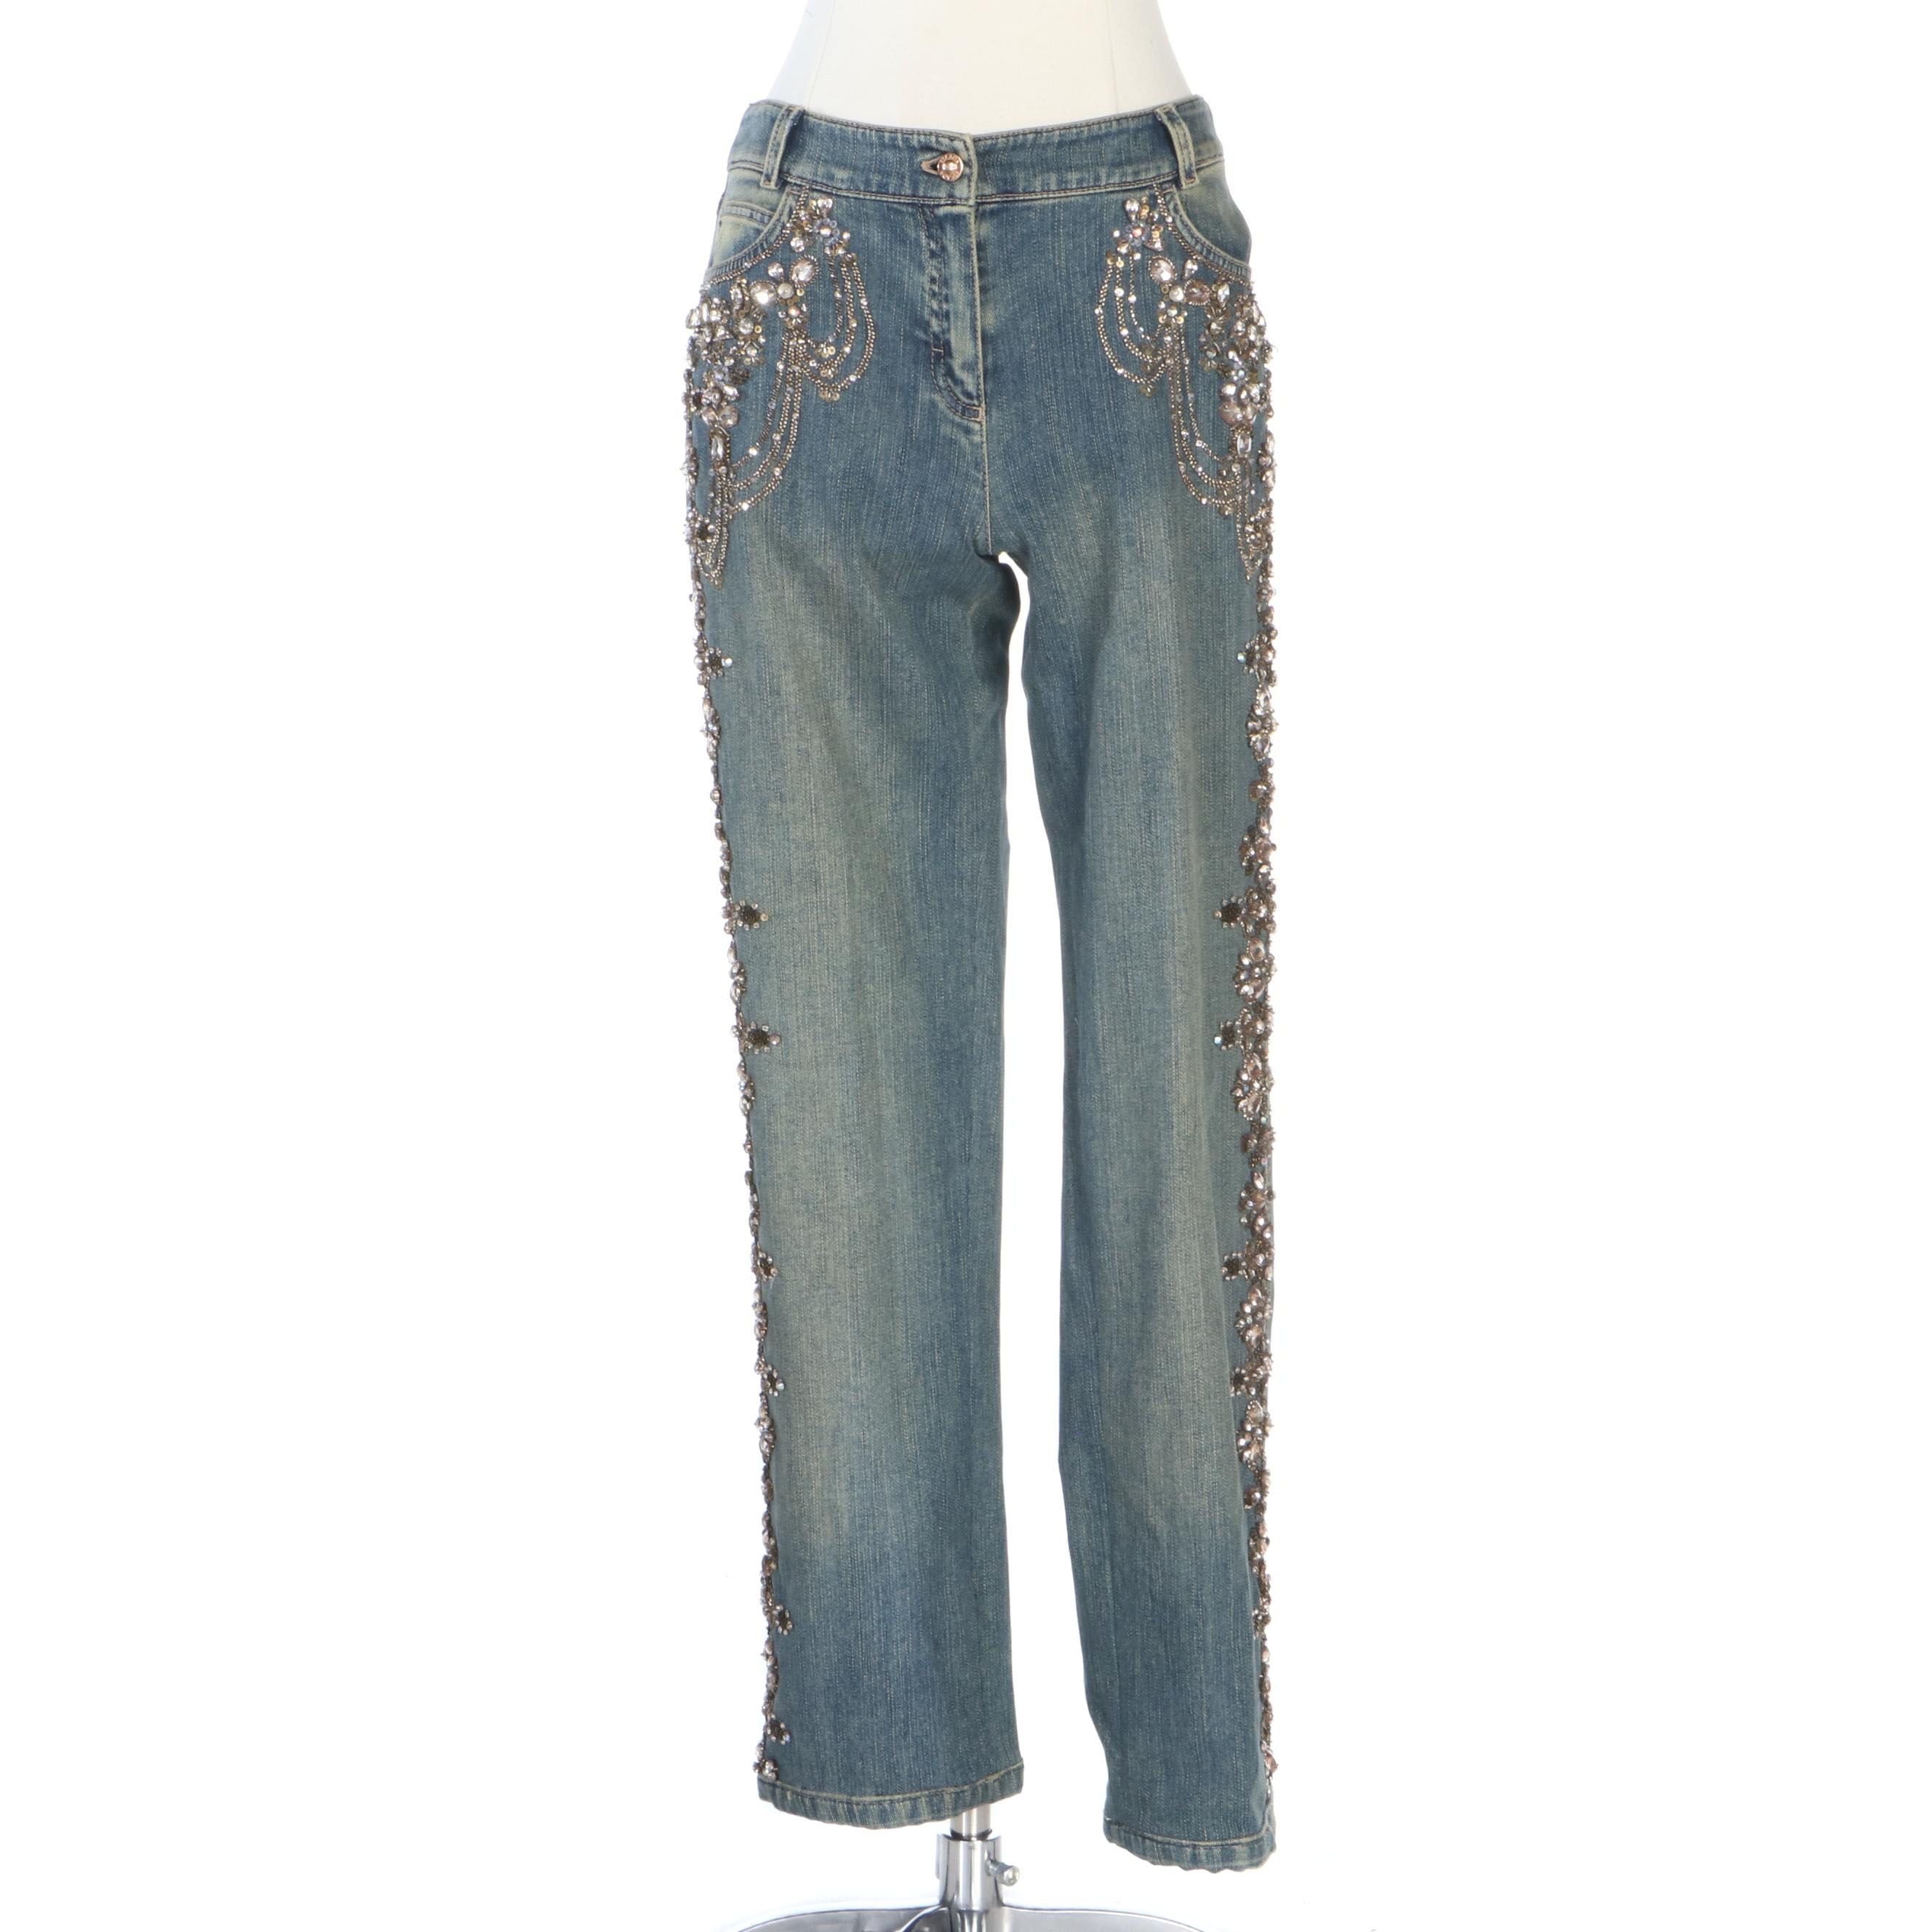 sequin embellished jeans